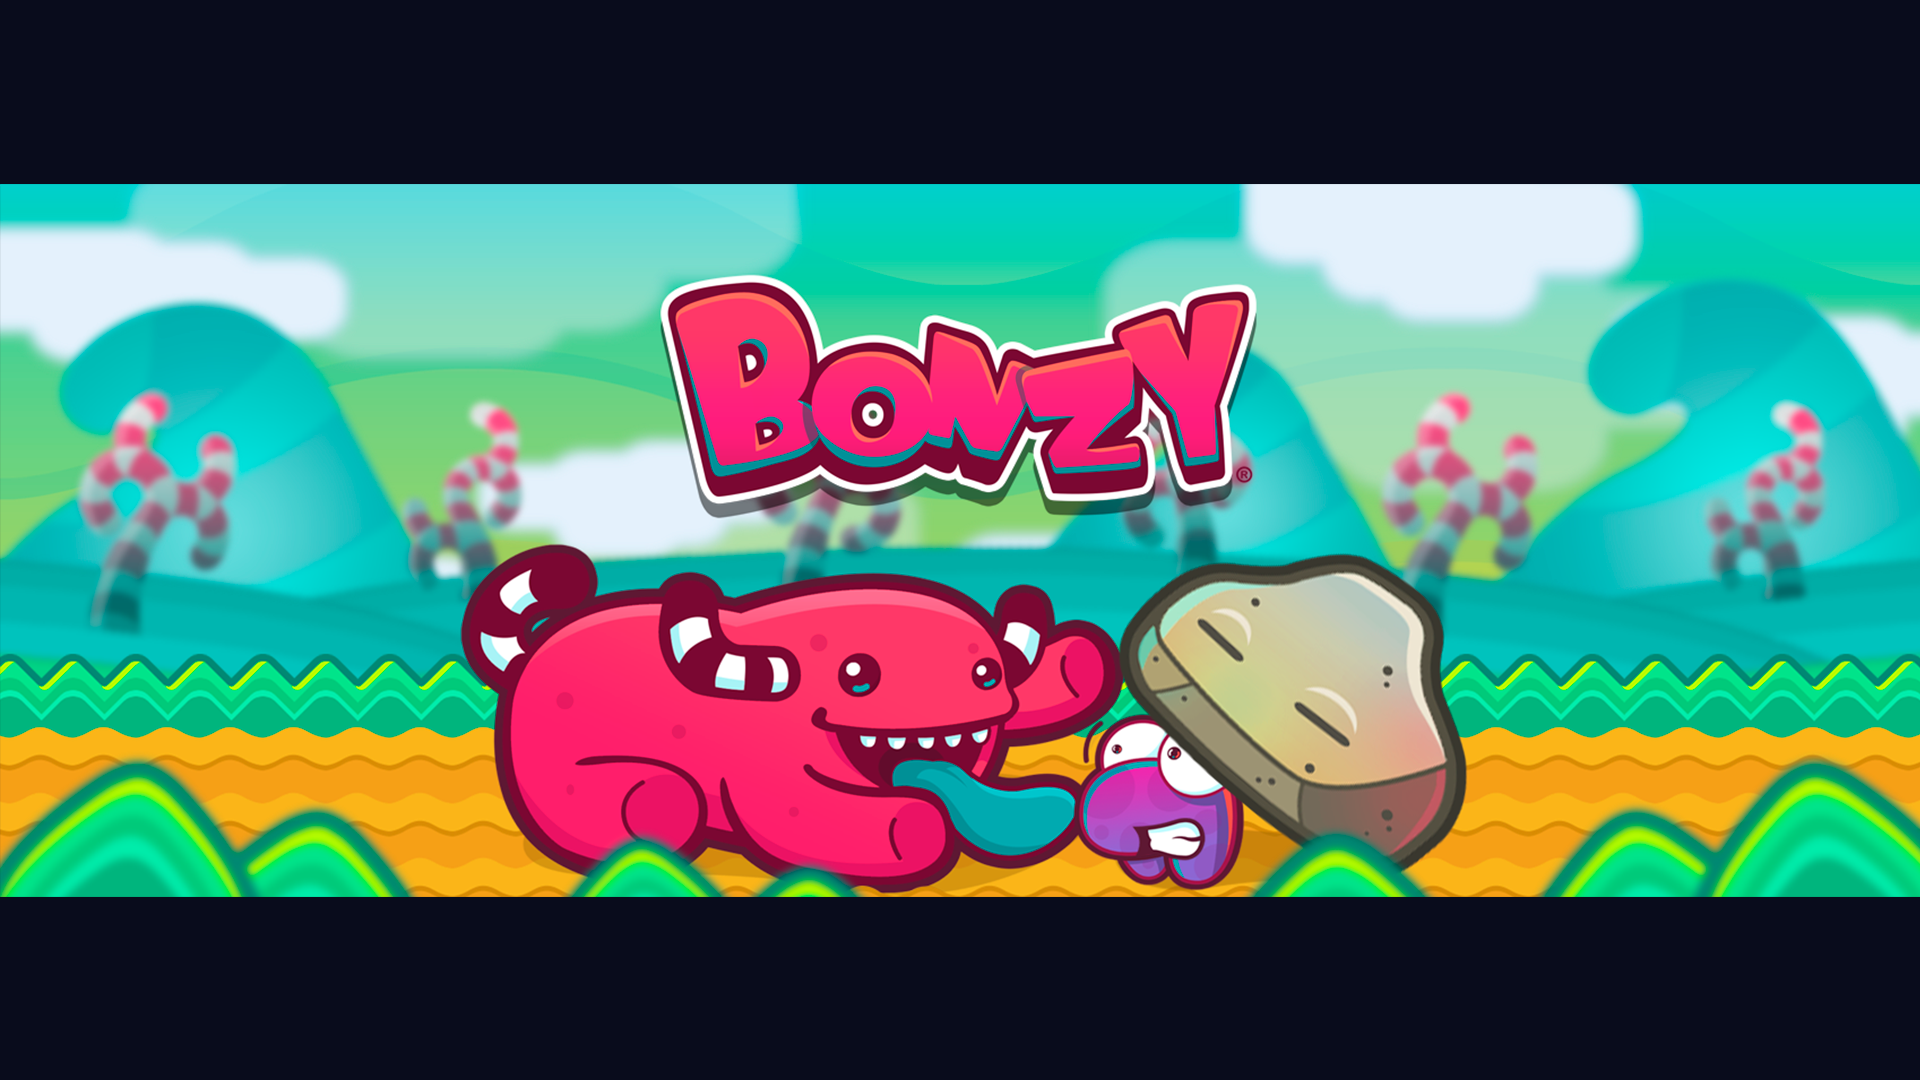 Bonzy - Key art 02